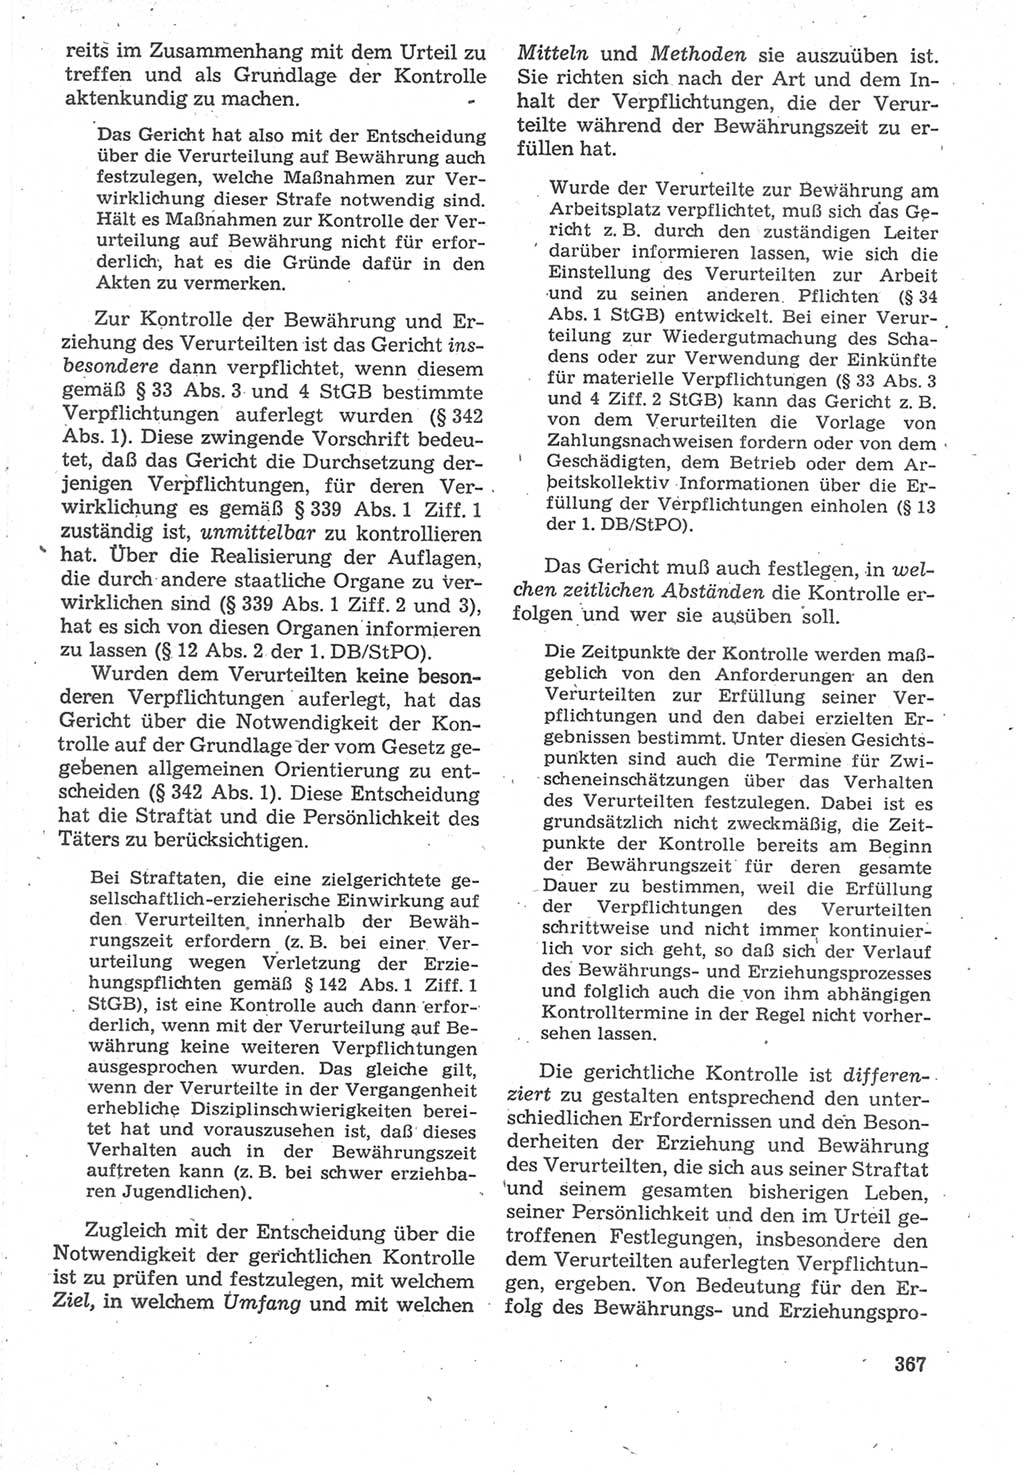 Strafverfahrensrecht [Deutsche Demokratische Republik (DDR)], Lehrbuch 1987, Seite 367 (Strafverf.-R. DDR Lb. 1987, S. 367)